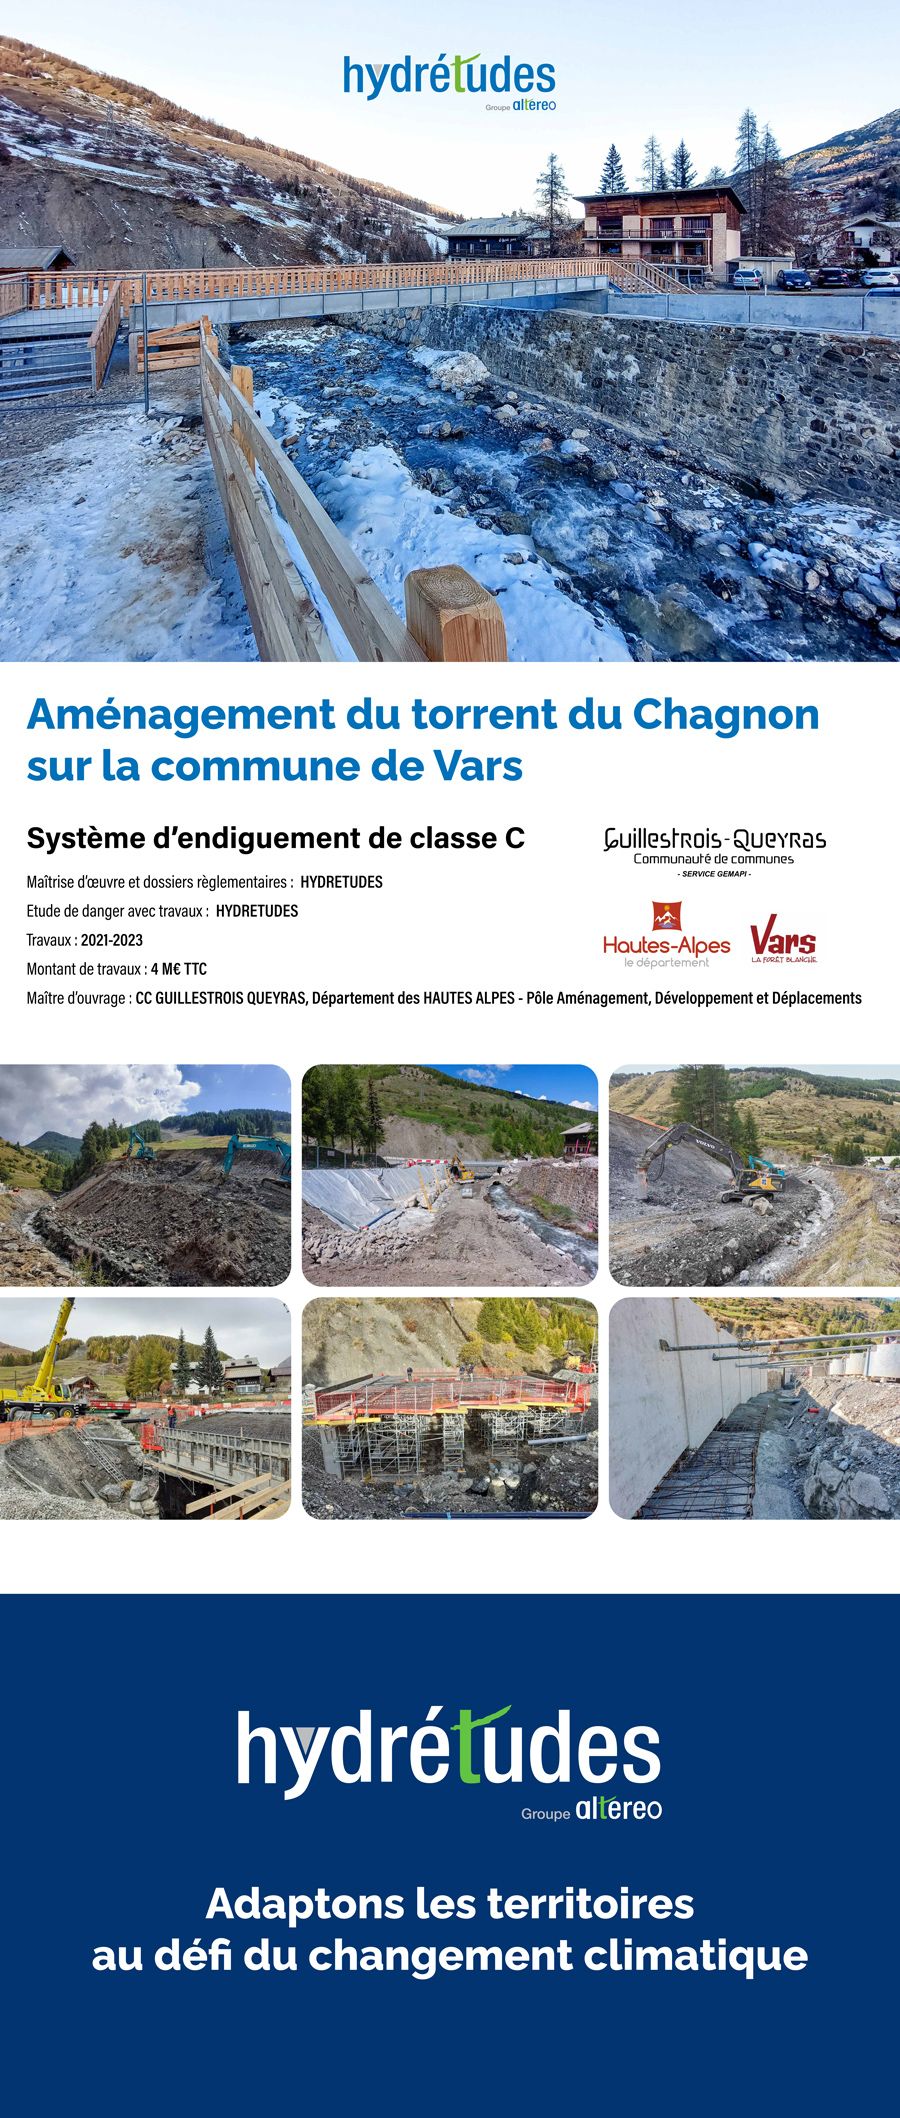 Hydrétudes projet d'aménagement du torrent du Chagnon sur la commune de Vars